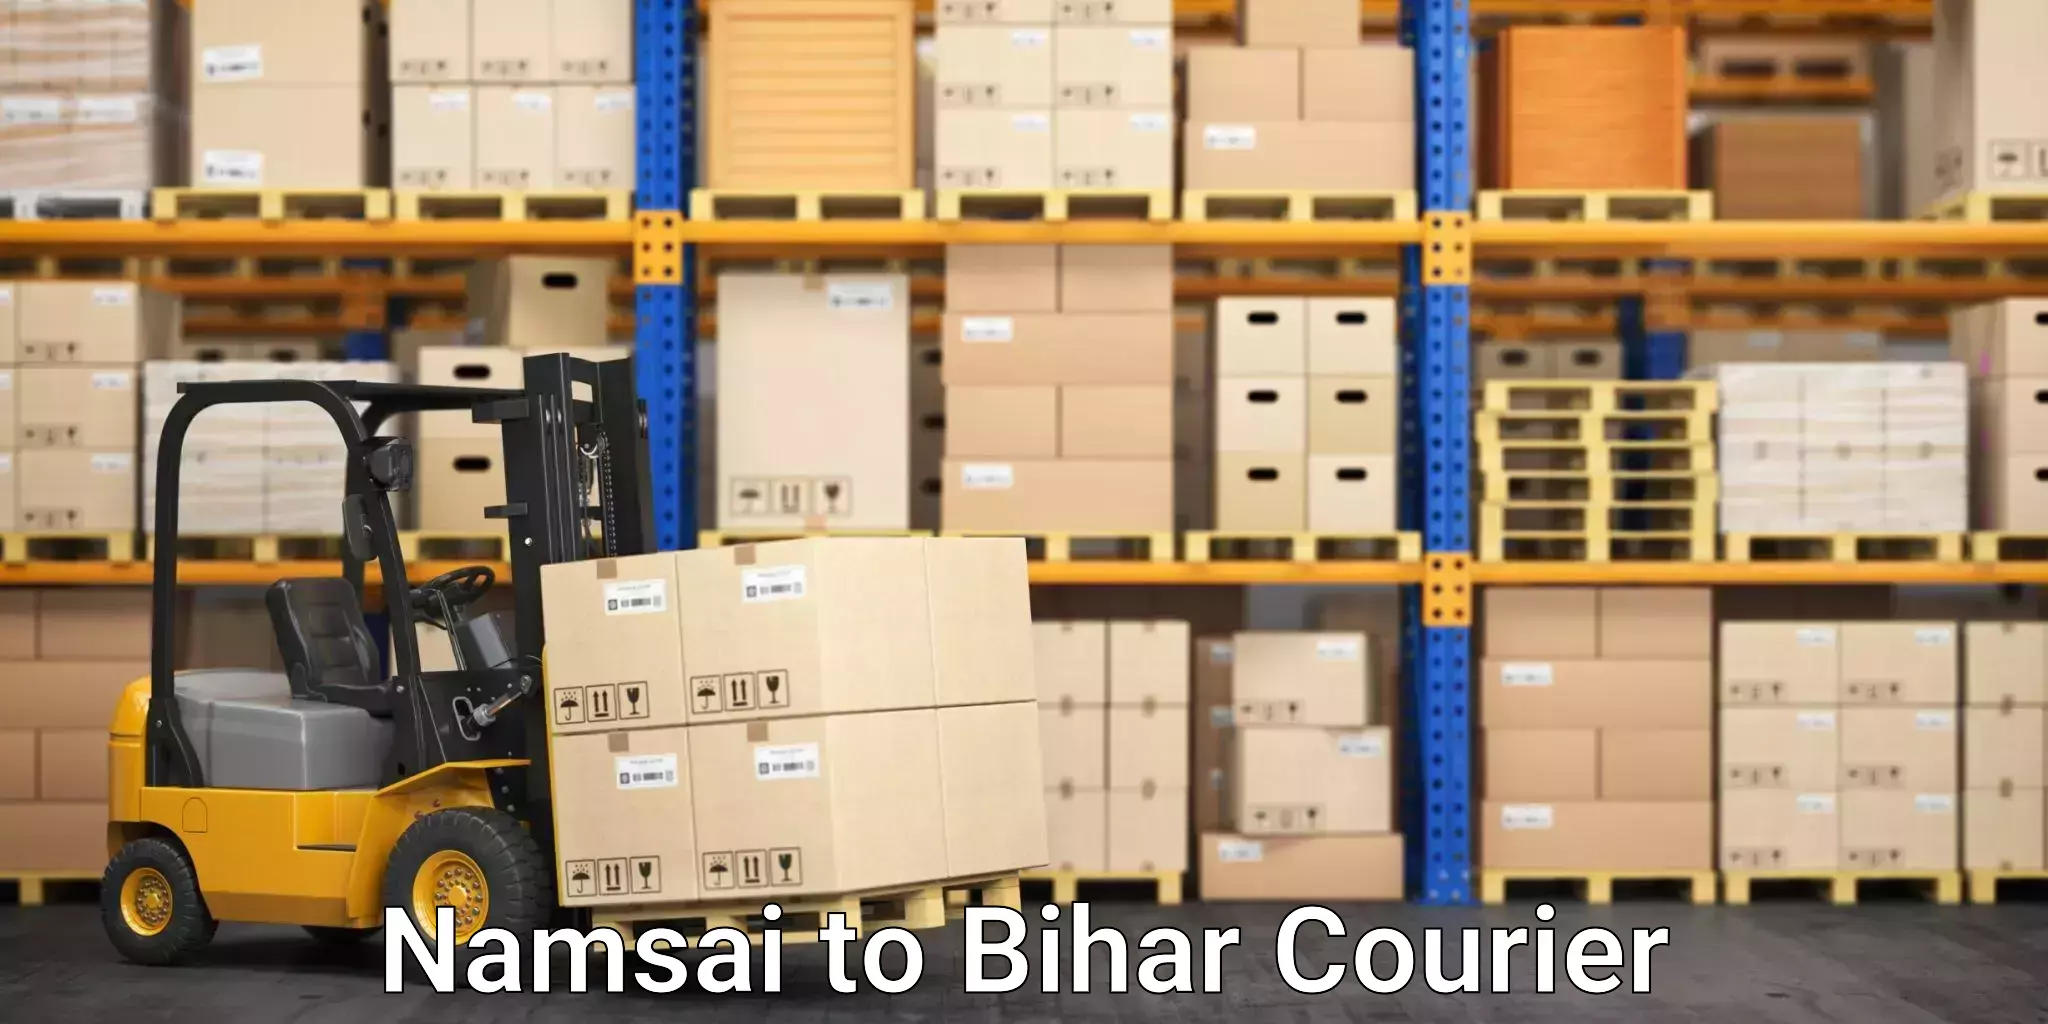 Next-day freight services Namsai to Bihar